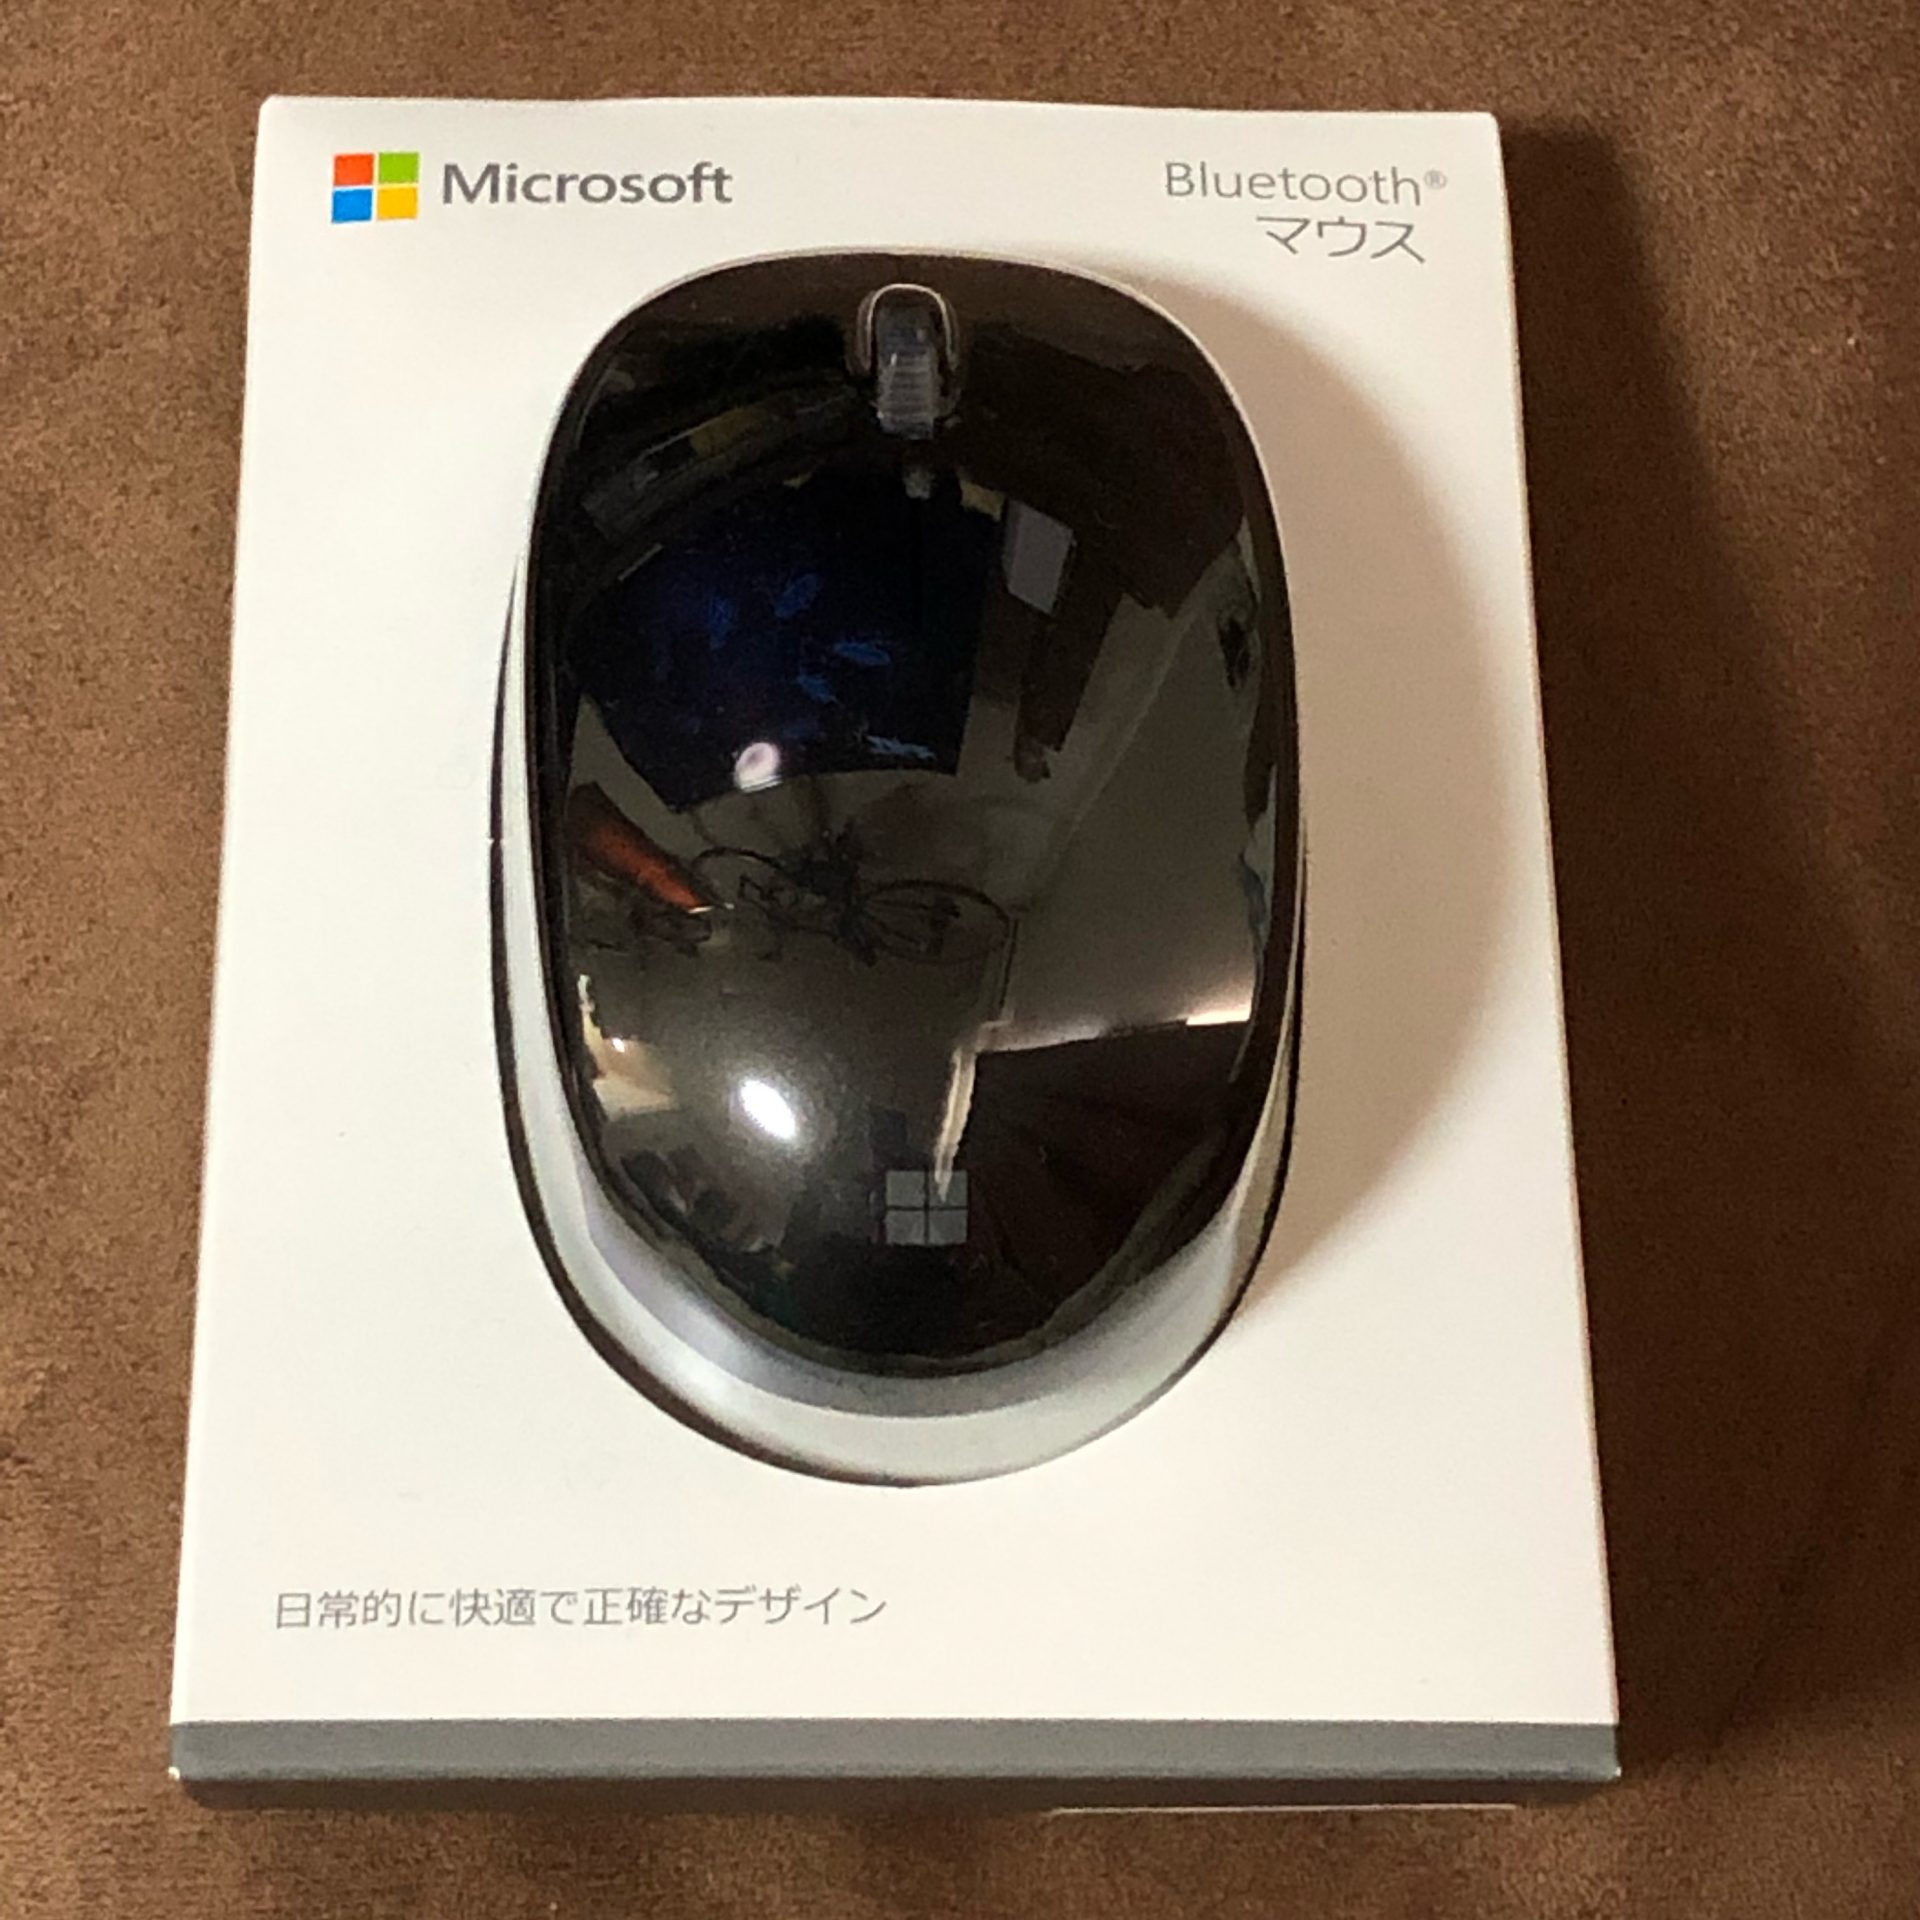 Microsoft Bluetoothマウス Rjn レビュー シンプルで使いやすいbluetoothマウス Junction